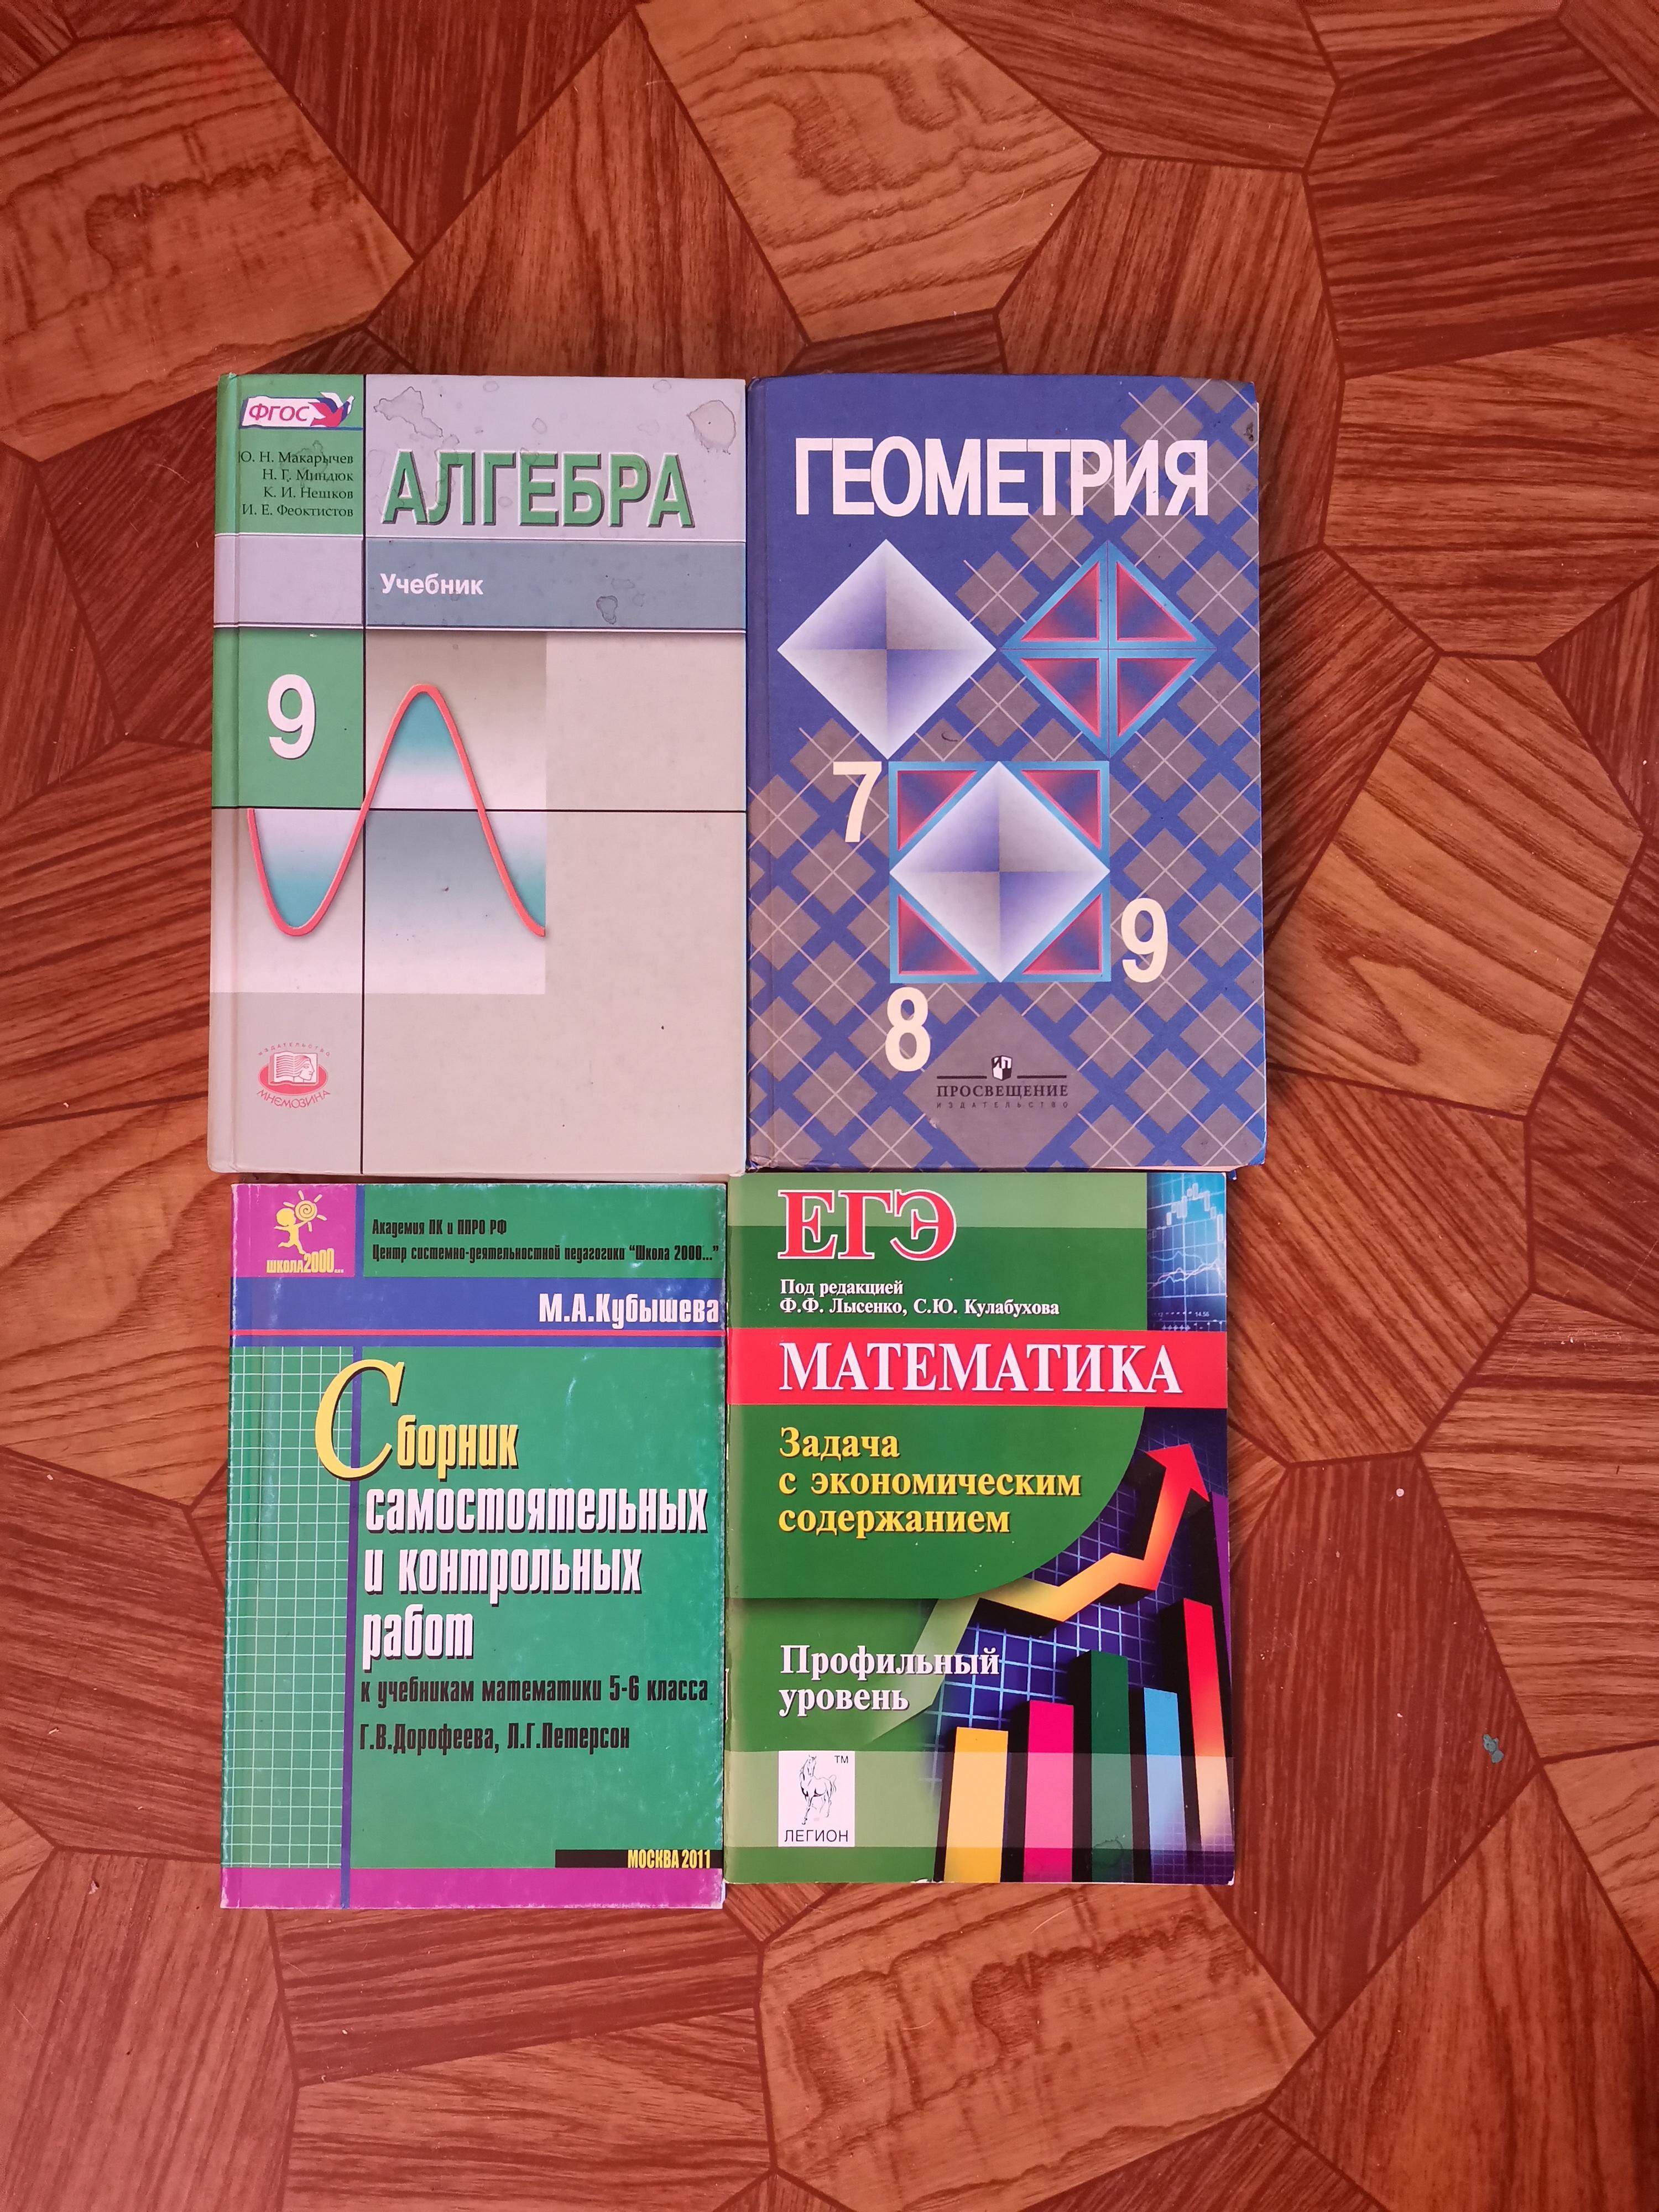 Атанасян электронный учебник 7 9. Геометрия учебник. Геометрия 7-9 класс учебник. Геометрия 7-9 класс Атанасян учебник. Учебник по алгебре 9 класс Атанасян.